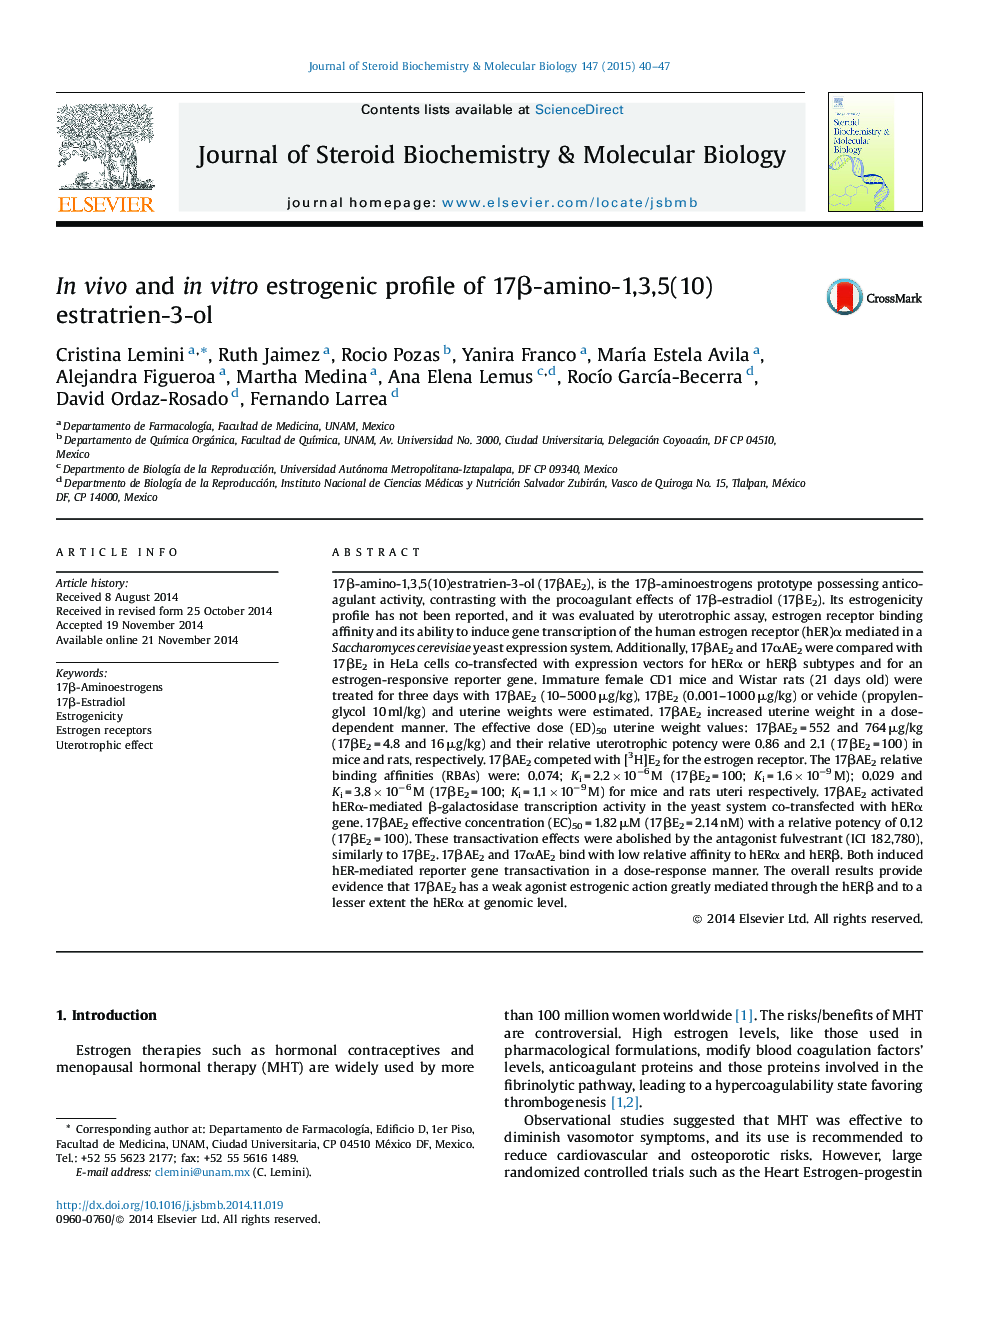 In vivo and in vitro estrogenic profile of 17β-amino-1,3,5(10)estratrien-3-ol